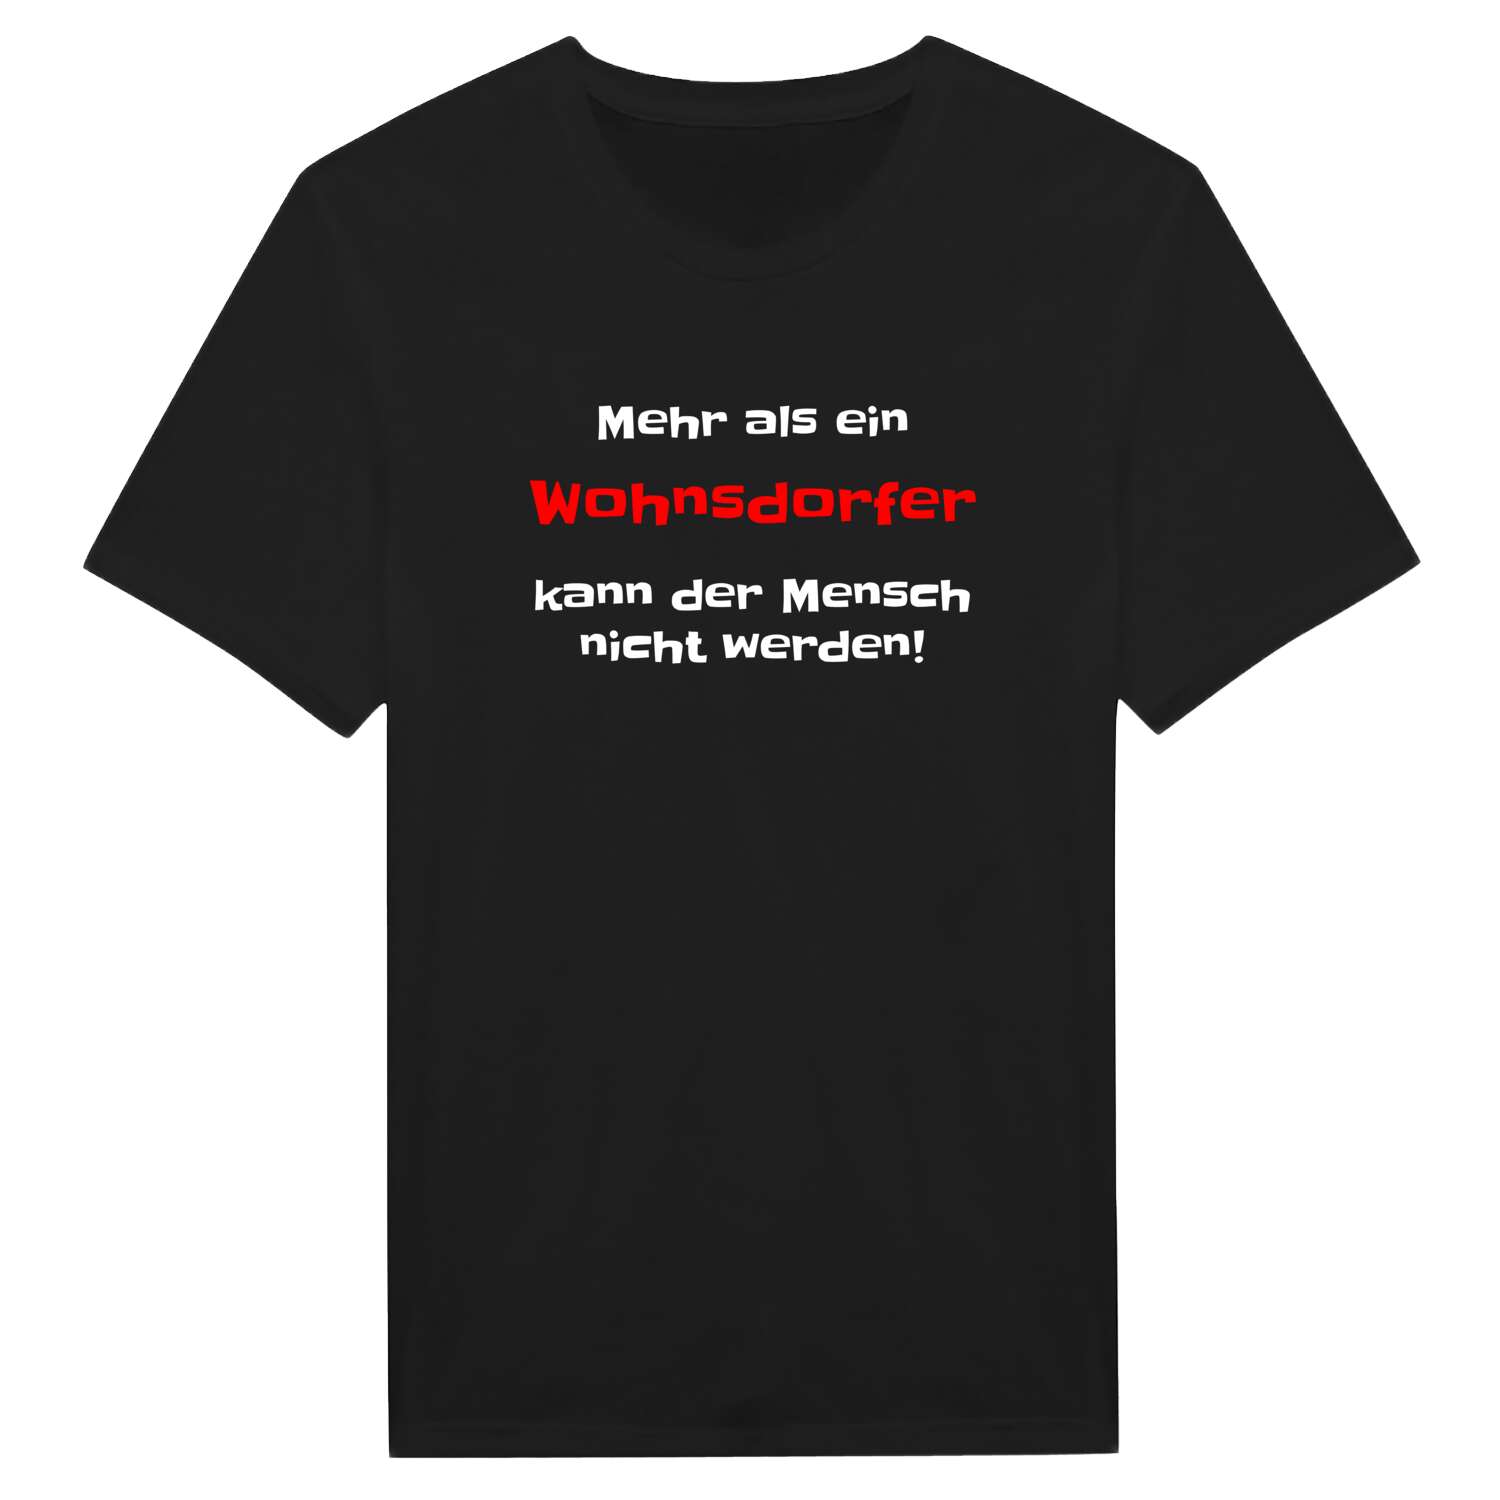 Wohnsdorf T-Shirt »Mehr als ein«